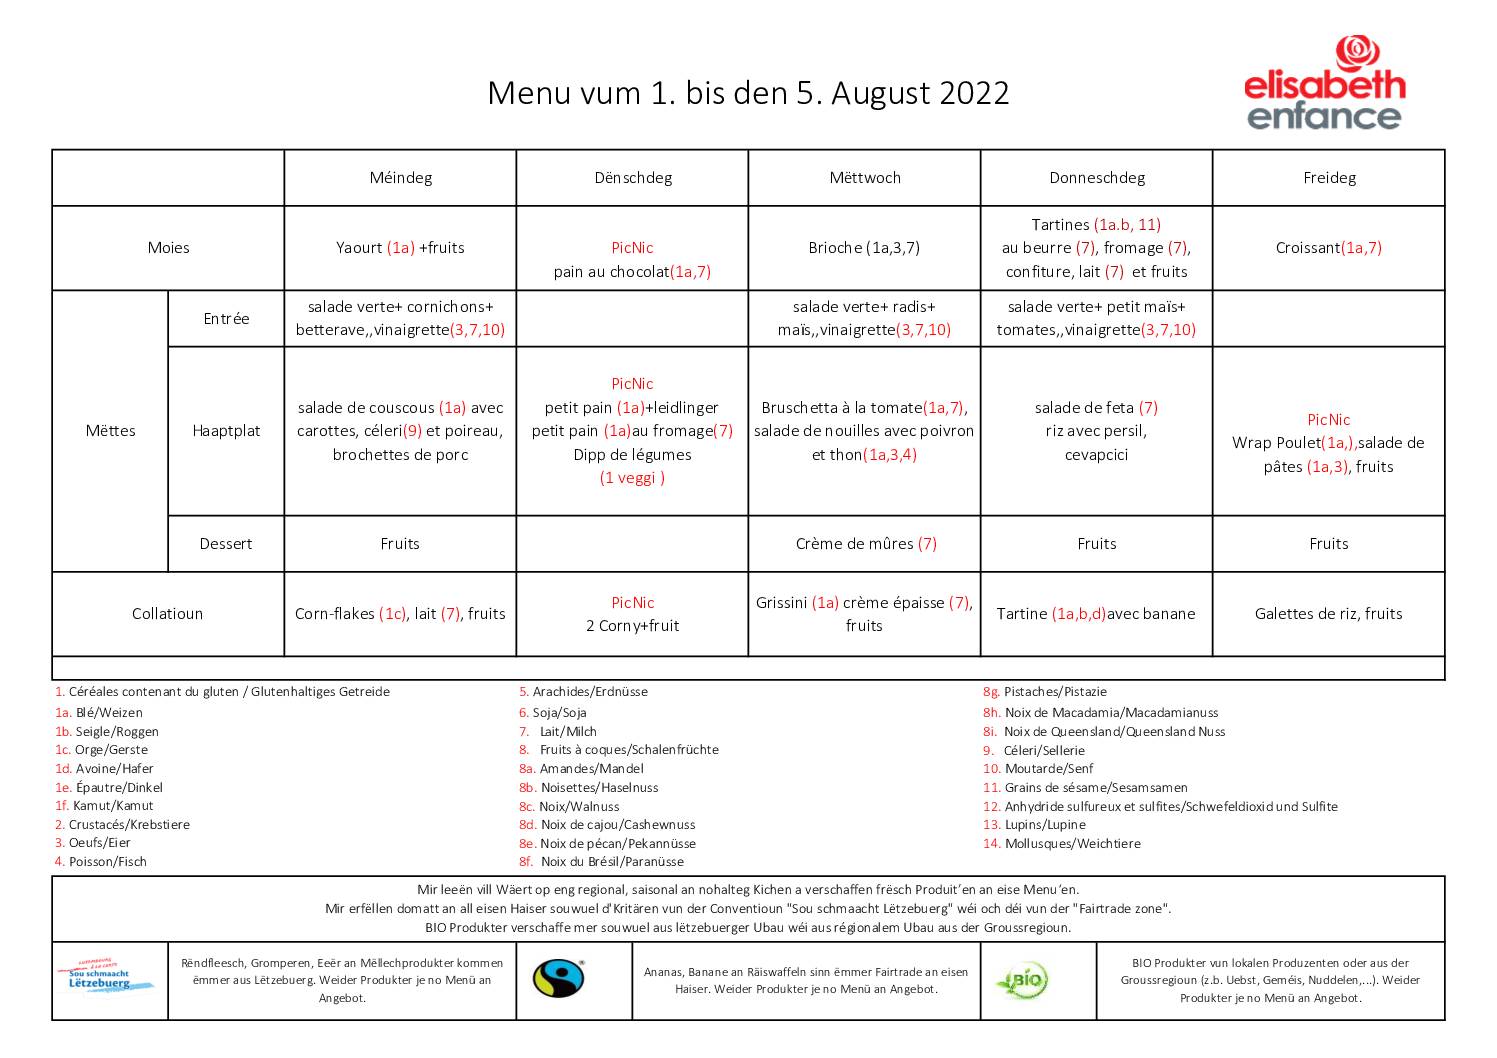 menus de la semaine du 1 au 5 août 2022